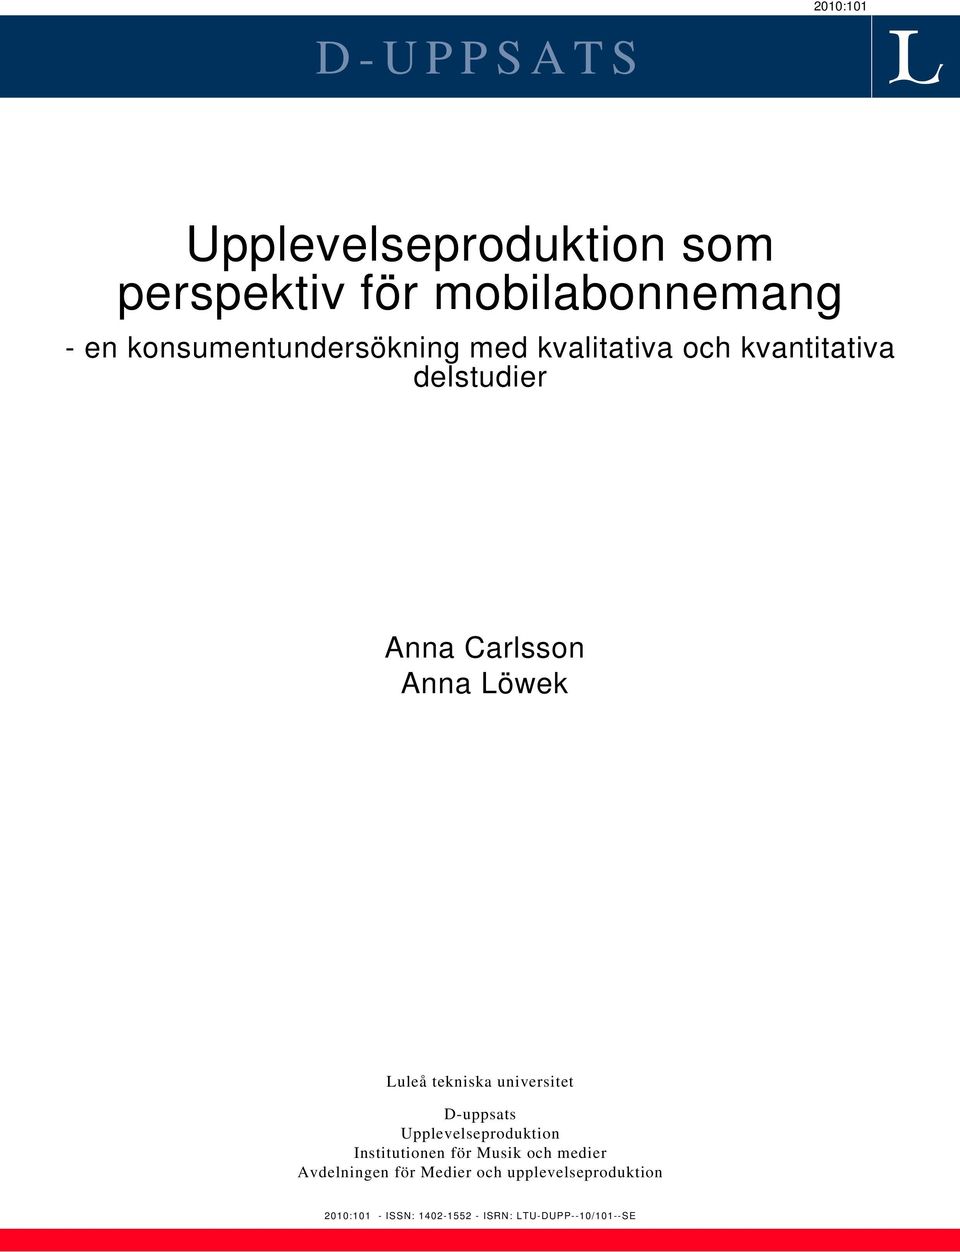 Luleå tekniska universitet D-uppsats Upplevelseproduktion Institutionen för Musik och